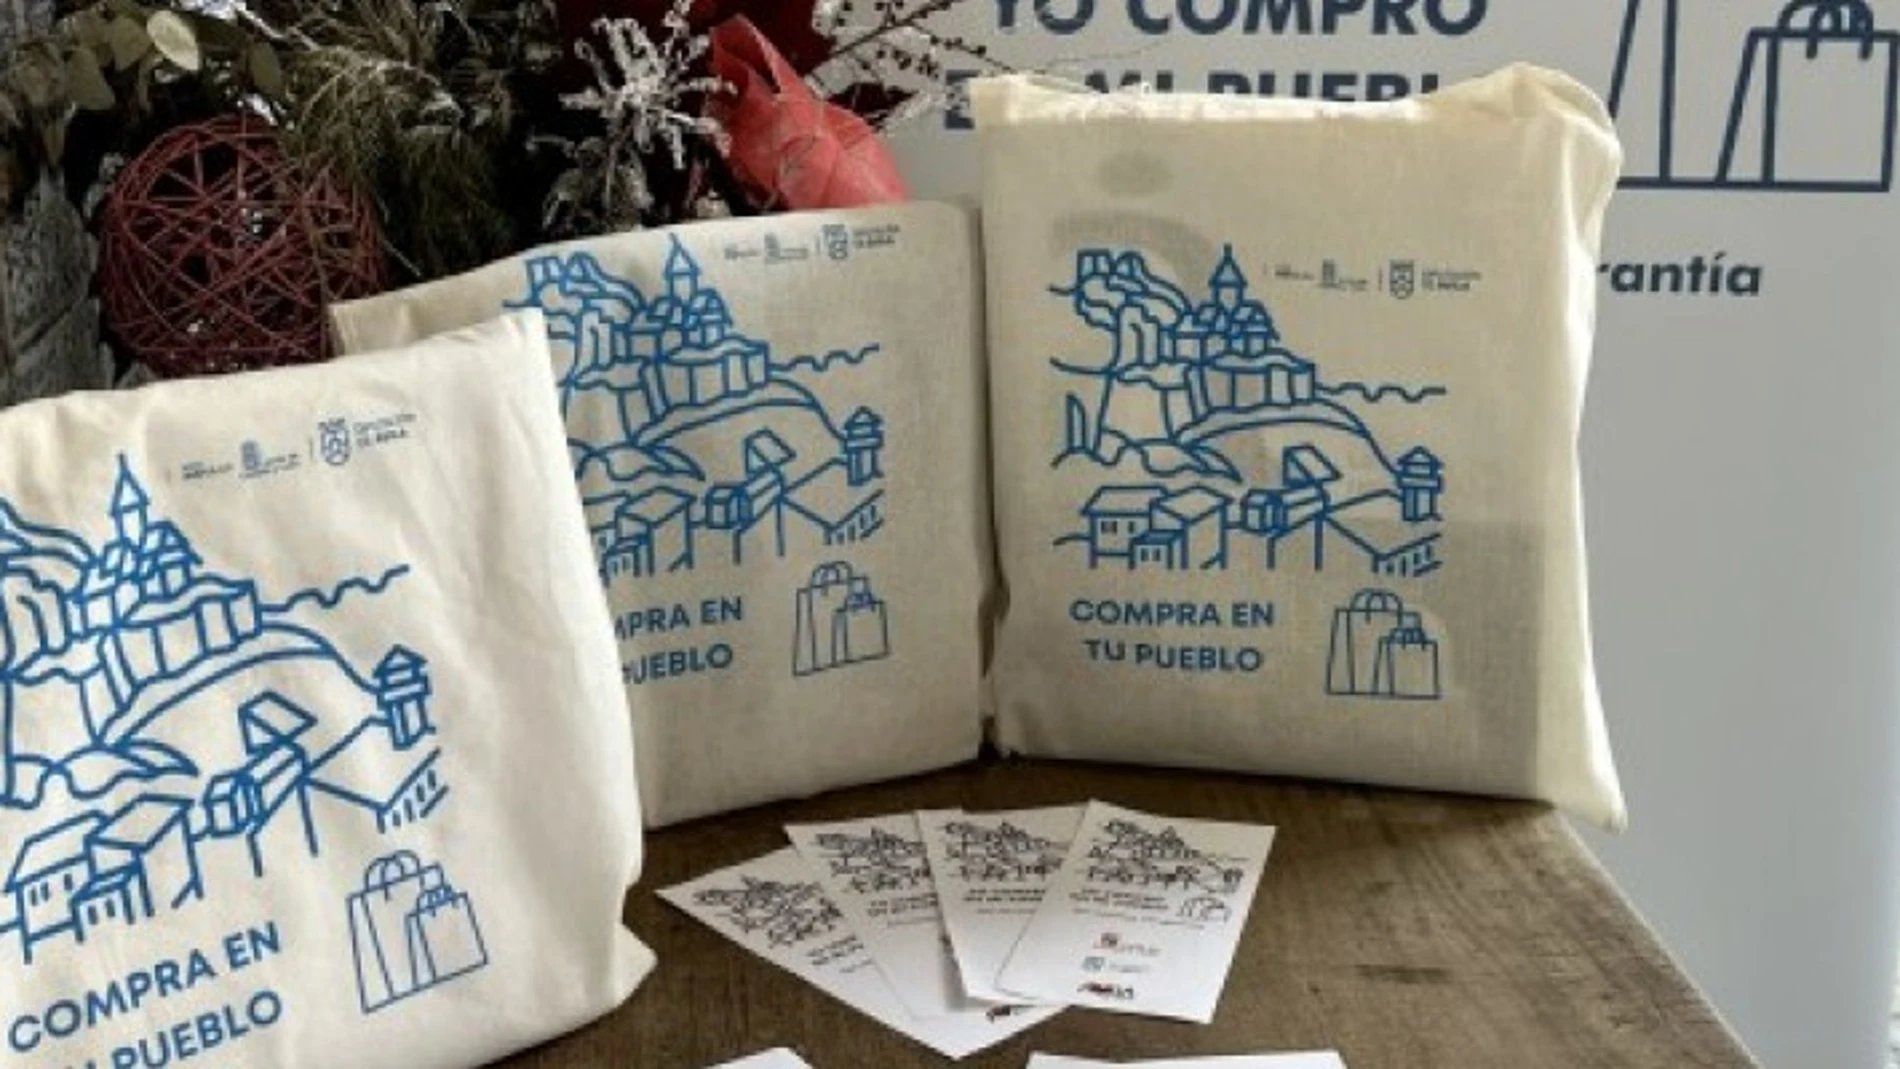 Campaña ‘Compra en tu pueblo’ de la Diputación de Ávila